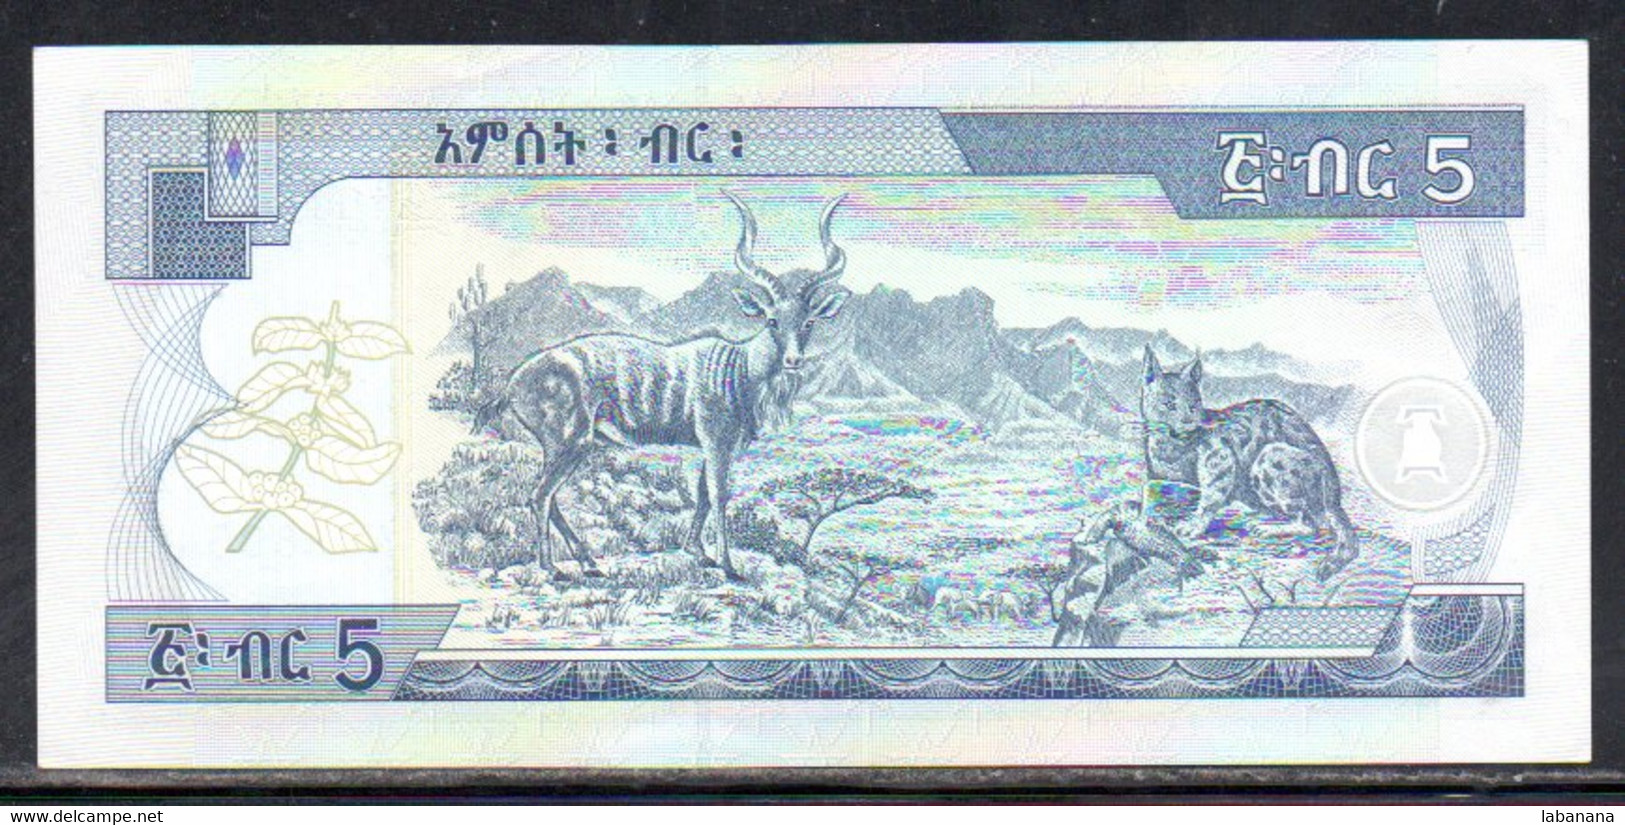 659-Ethiopie 5 Birr 1998 AU963 - Ethiopie